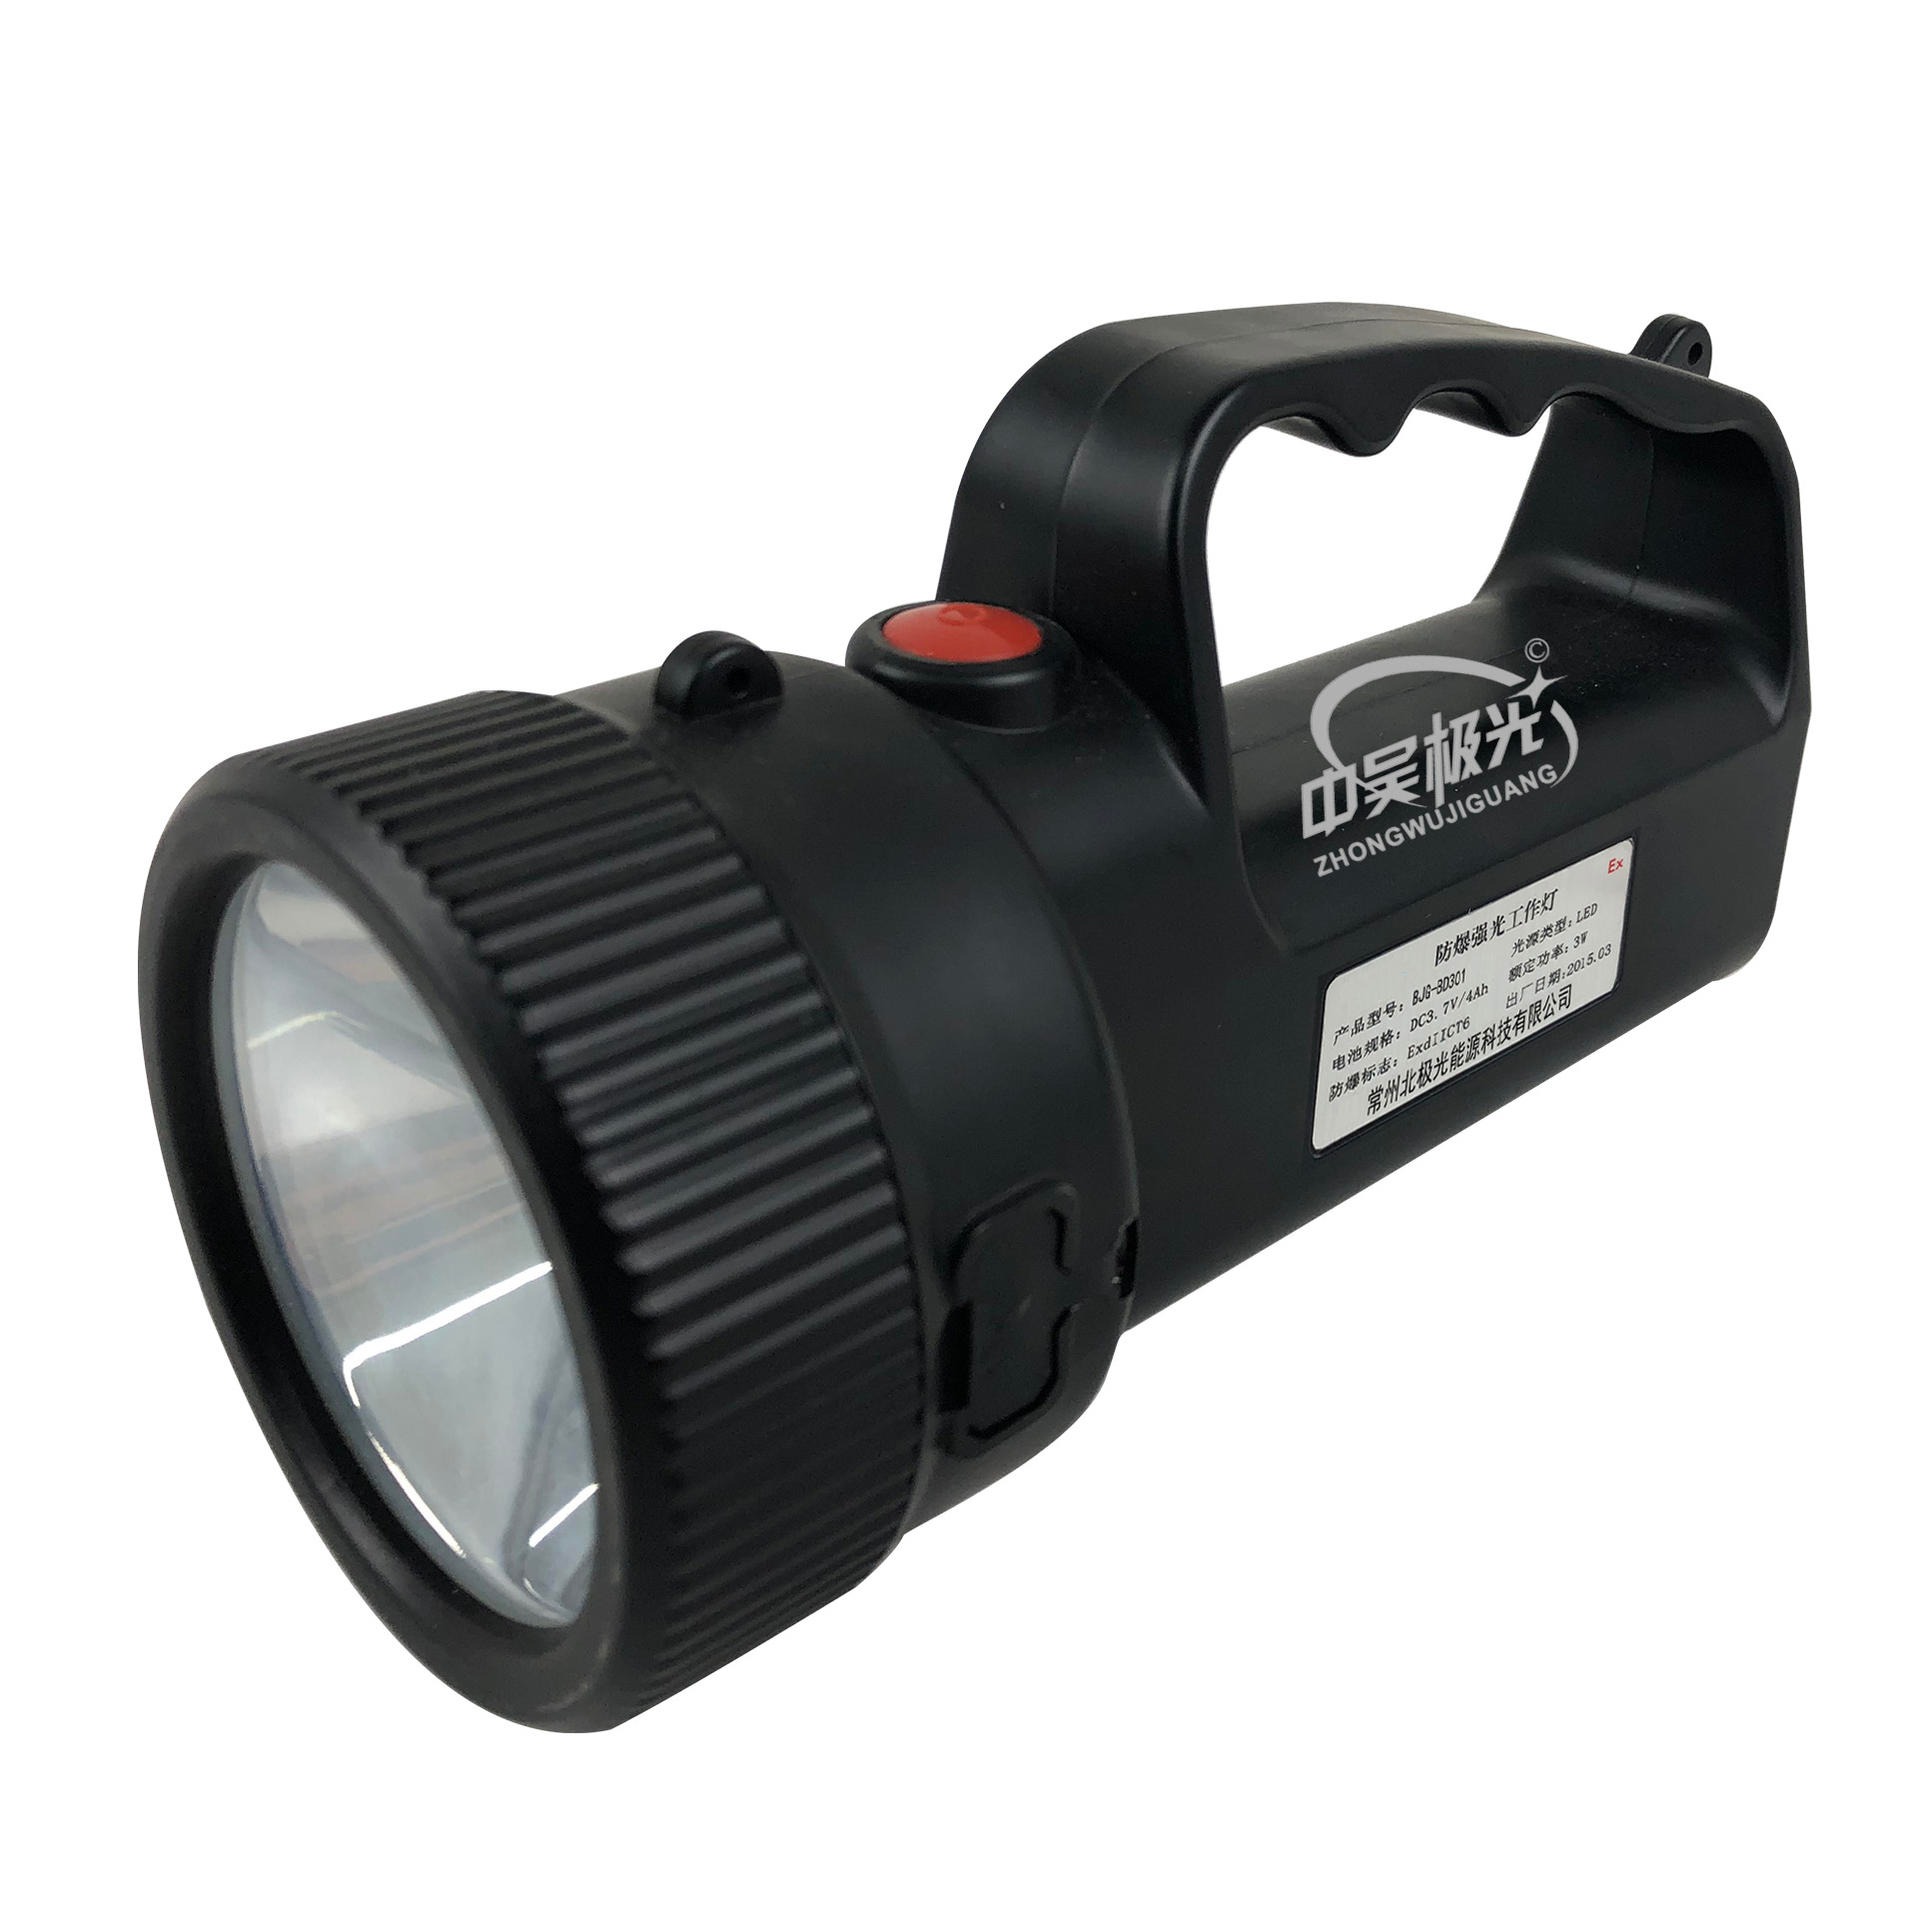 防爆强光工作灯 LED移动工作灯 LED特种灯具 手提式移动应急照明 BJG-AD301图片